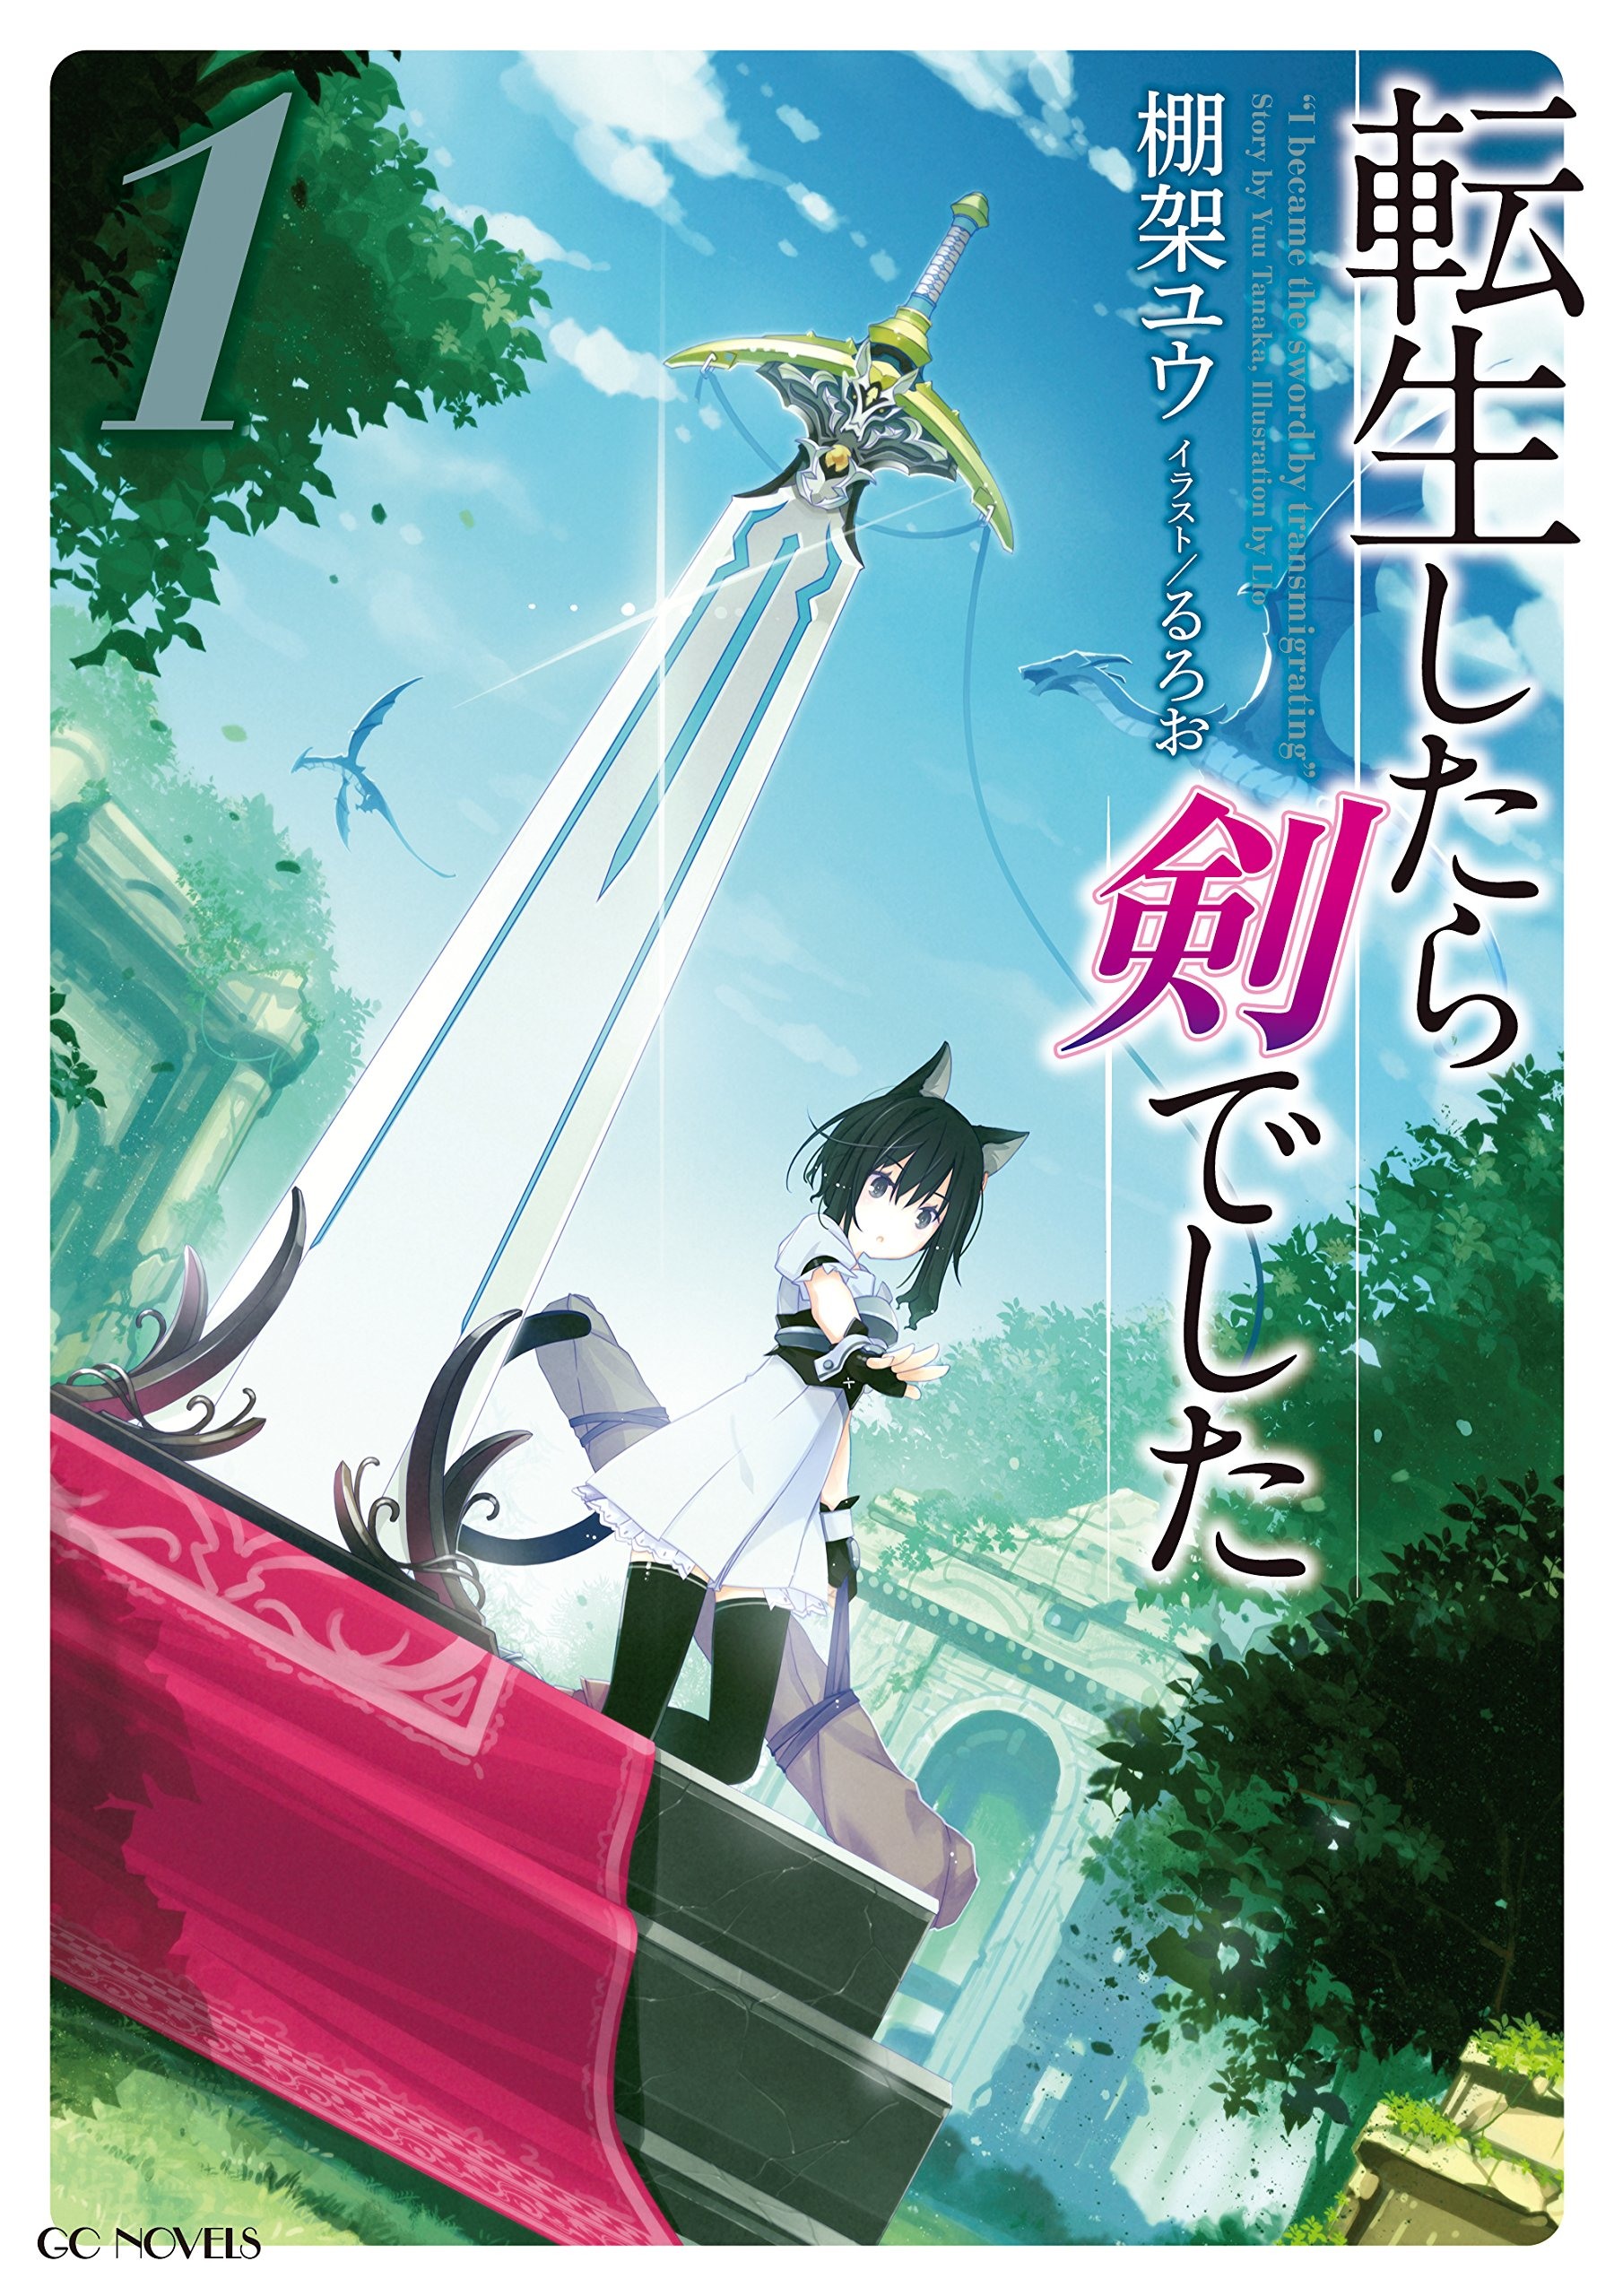 Light Novel, Reincarnated as a Sword Wiki